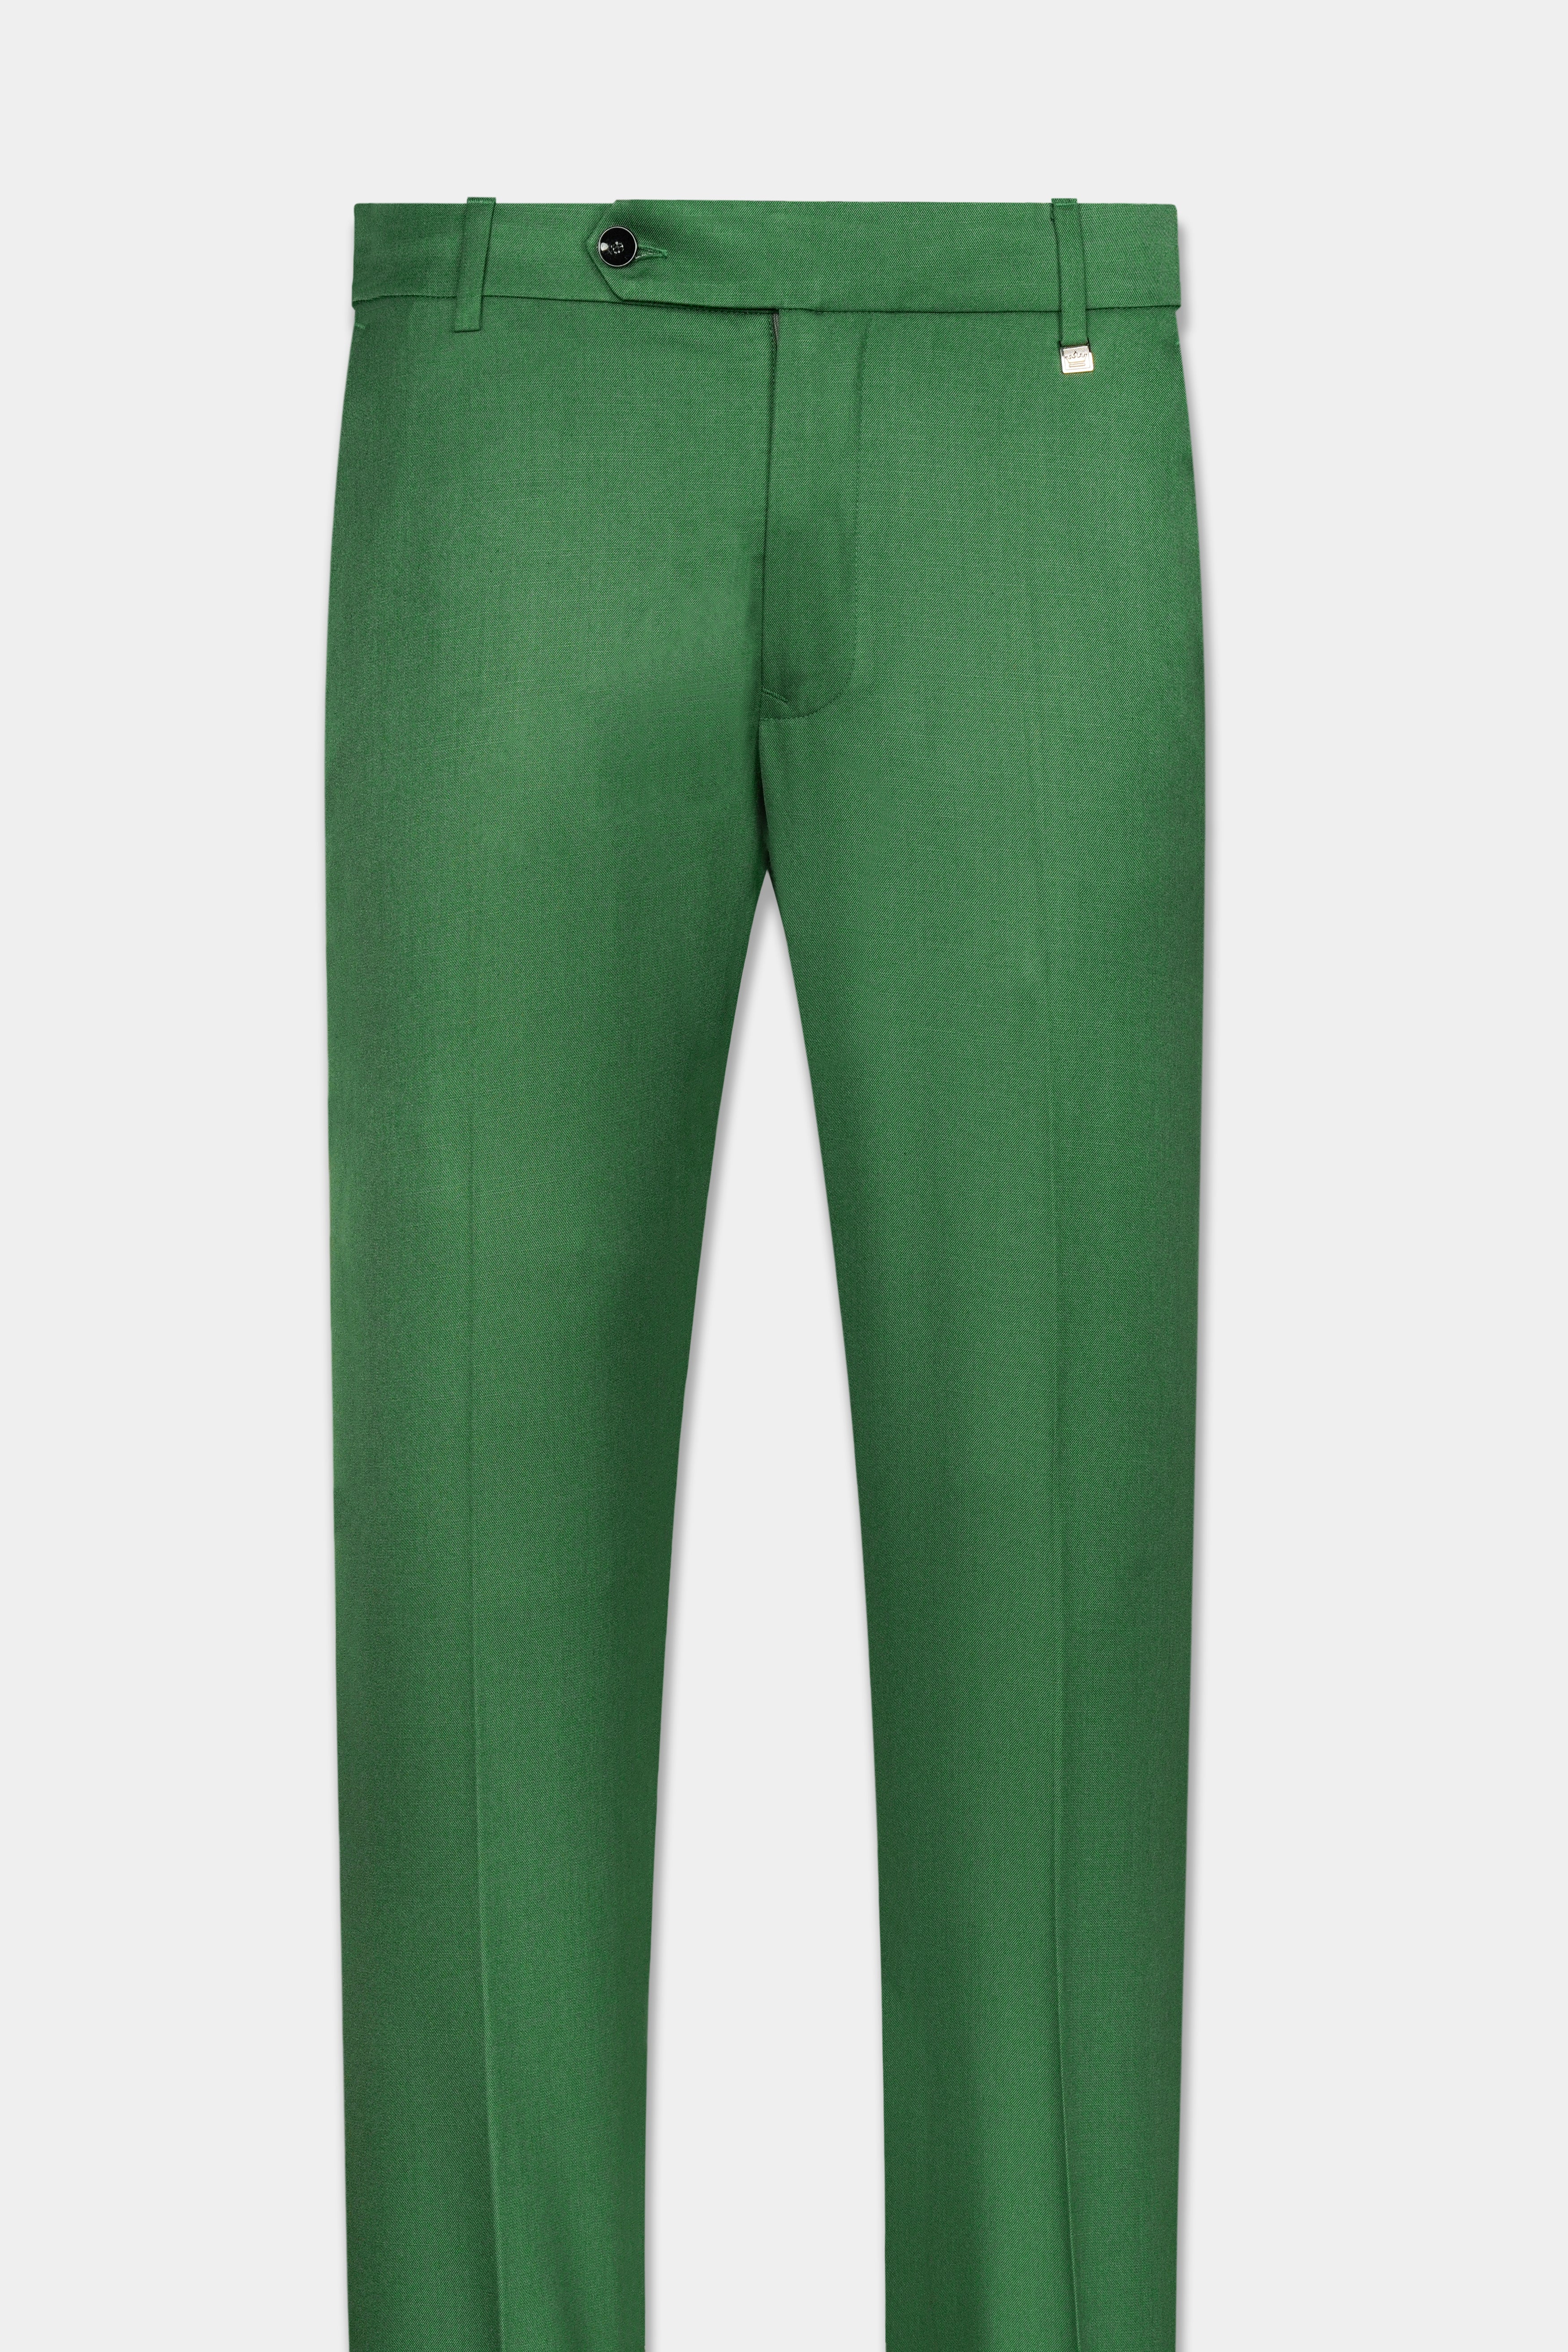 Como Green Wool Rich Pant T3065-28, T3065-30, T3065-32, T3065-34, T3065-36, T3065-38, T3065-40, T3065-42, T3065-44